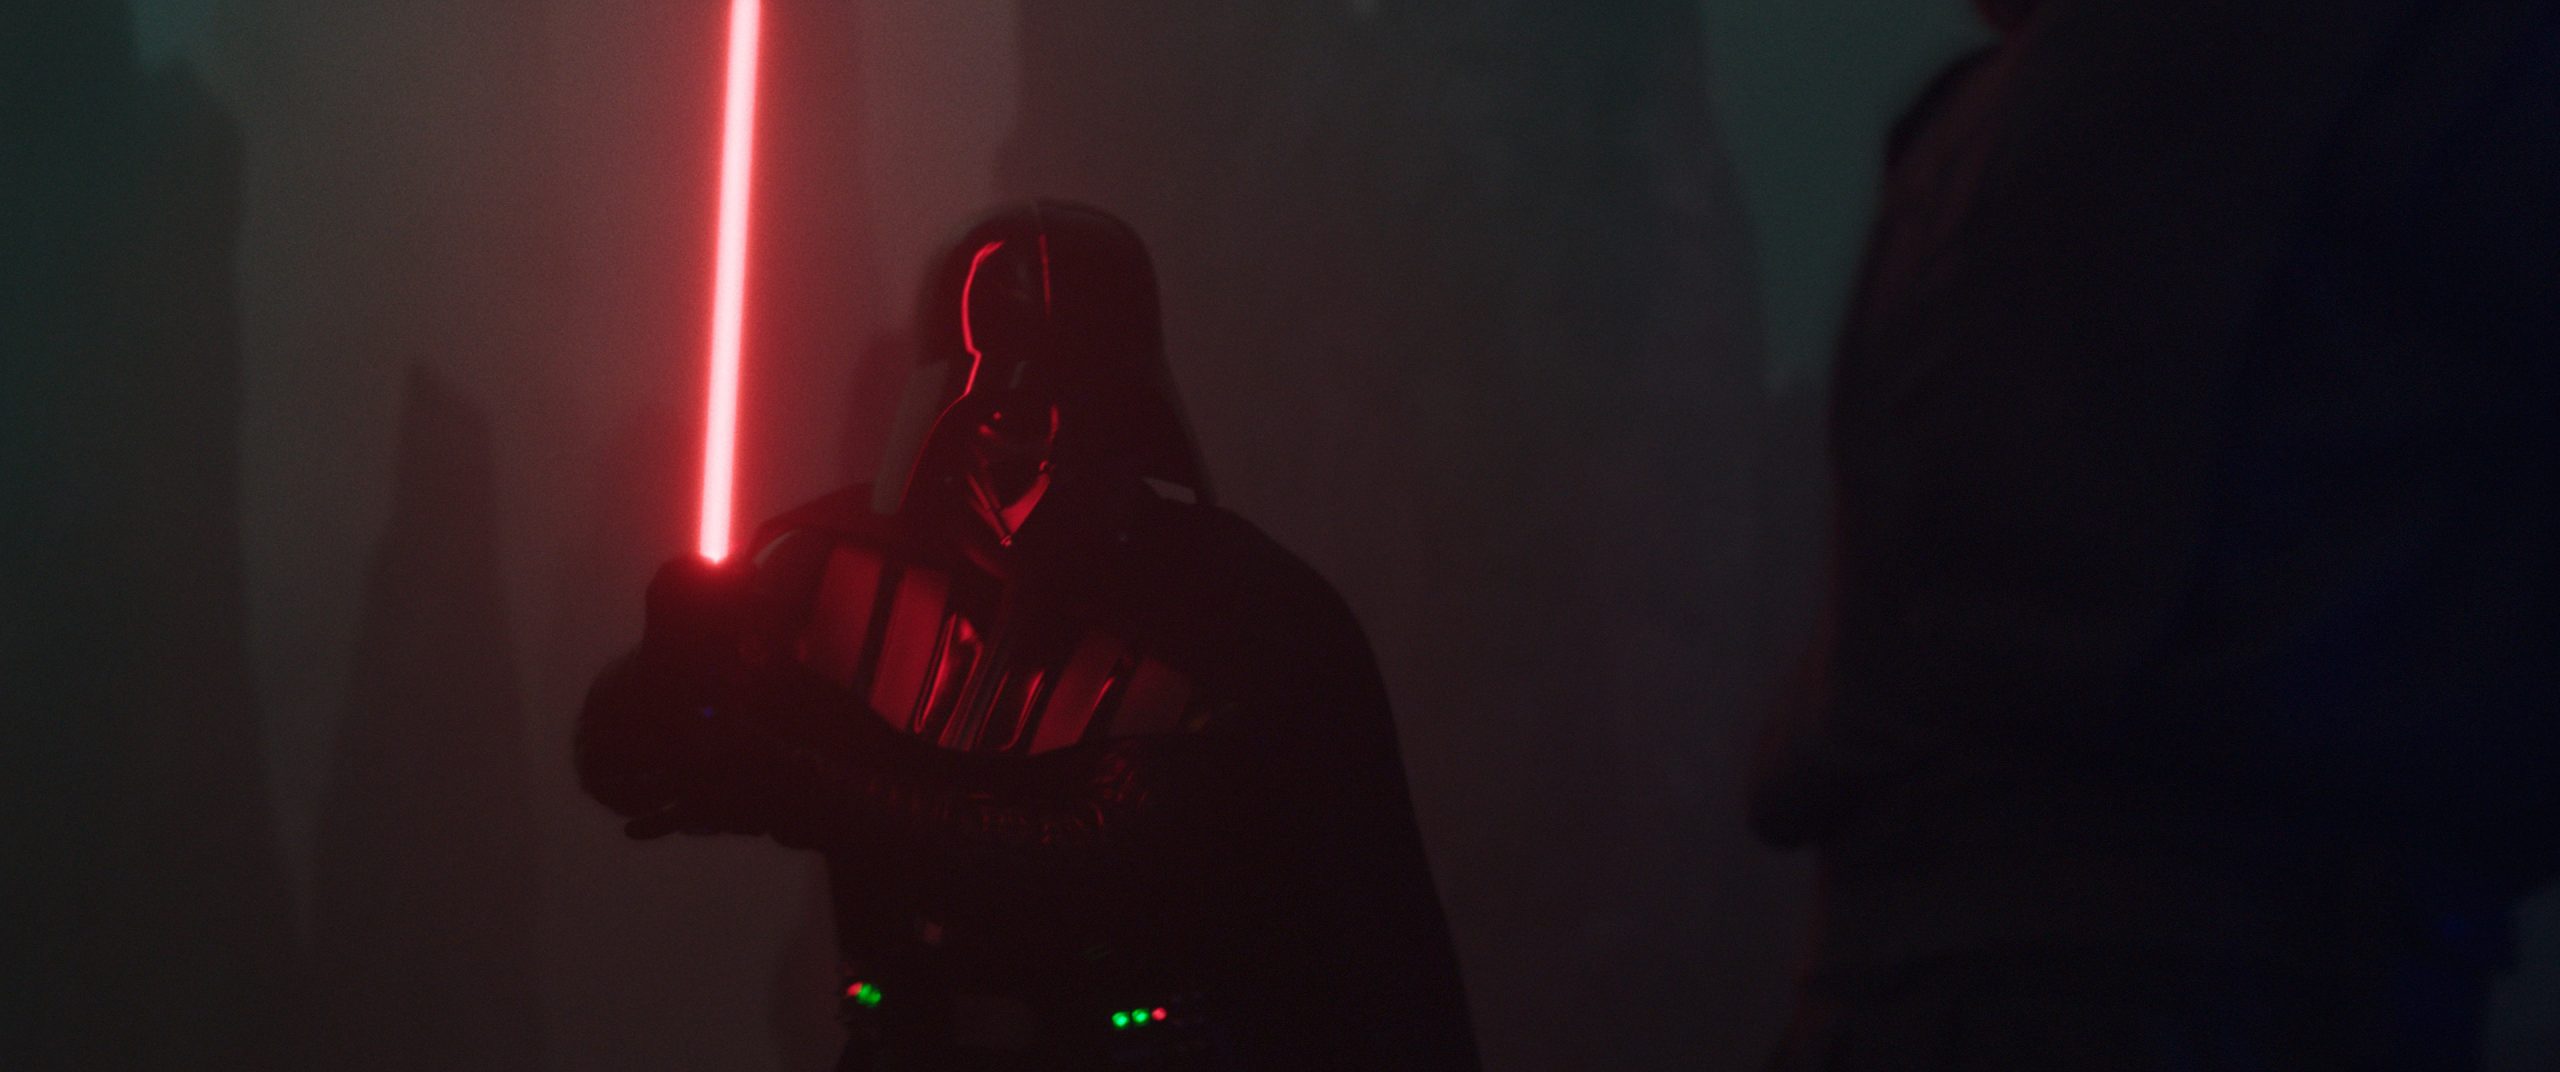 Darth Vader (Hayden Christensen) em OBI-WAN KENOBI da Lucasfilm, exclusivamente no Disney+. © 2022 Lucasfilm Ltd. Todos os direitos reservados.